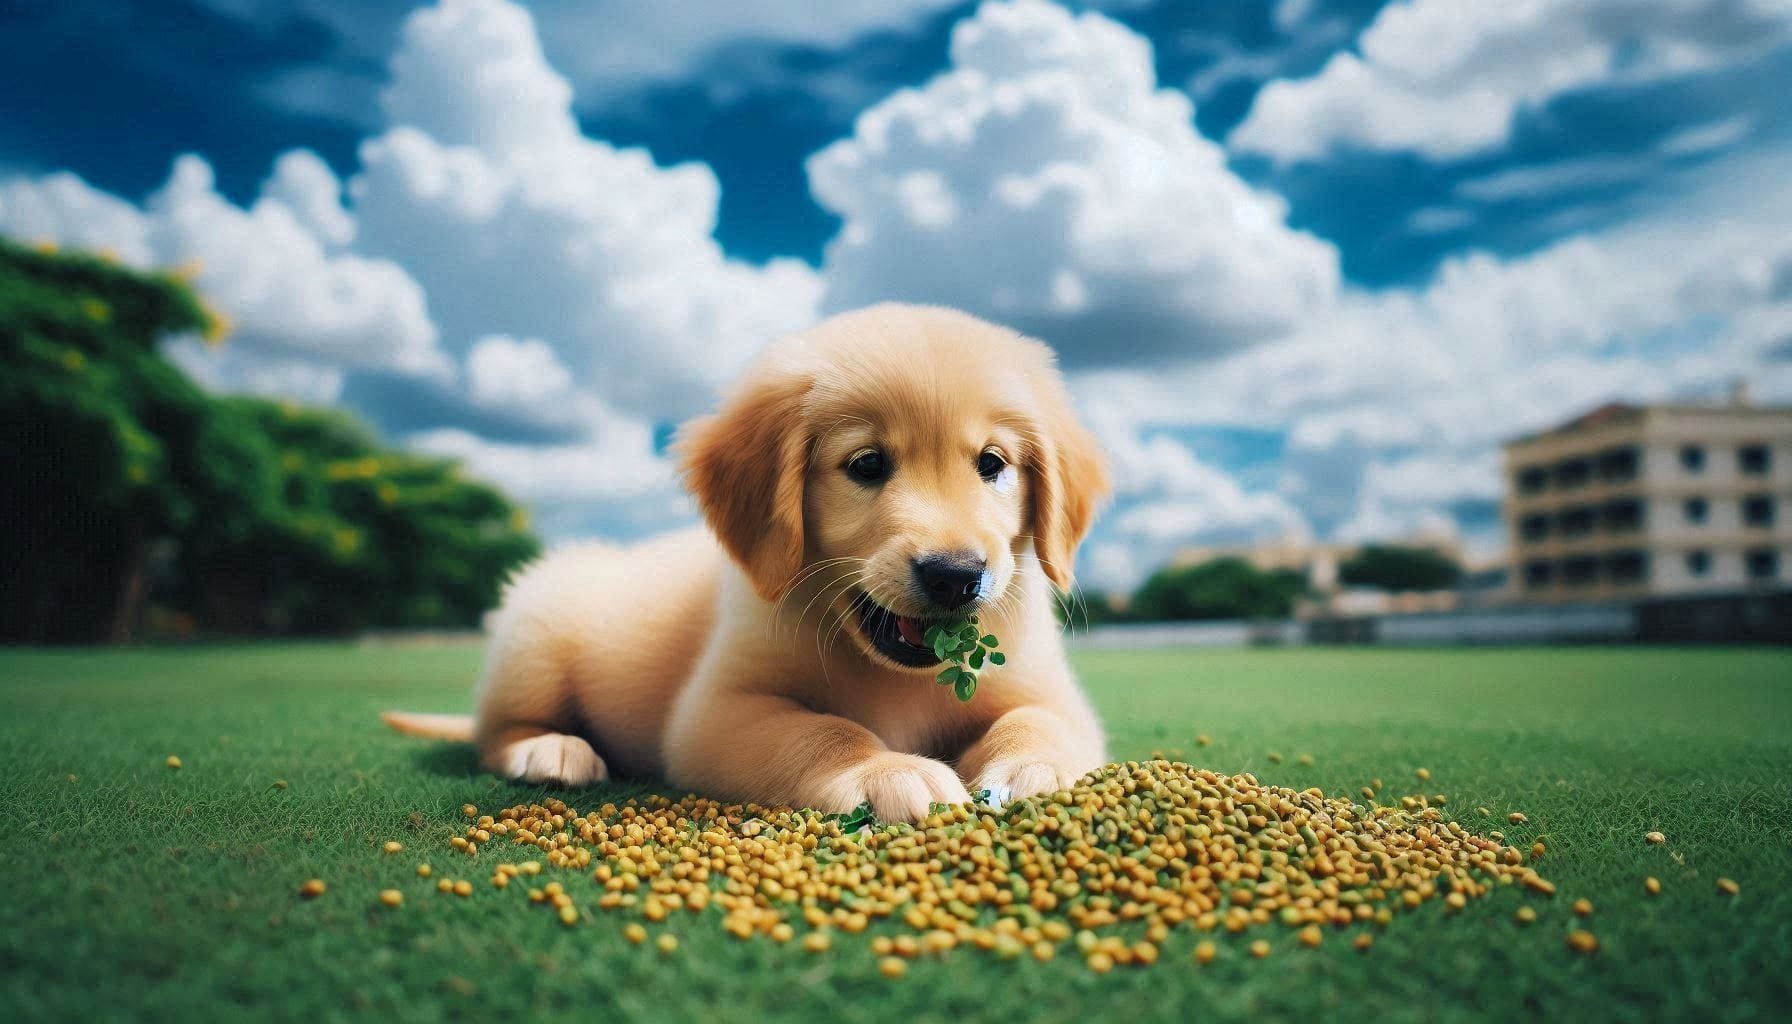 A dog eating fenugreek seeds